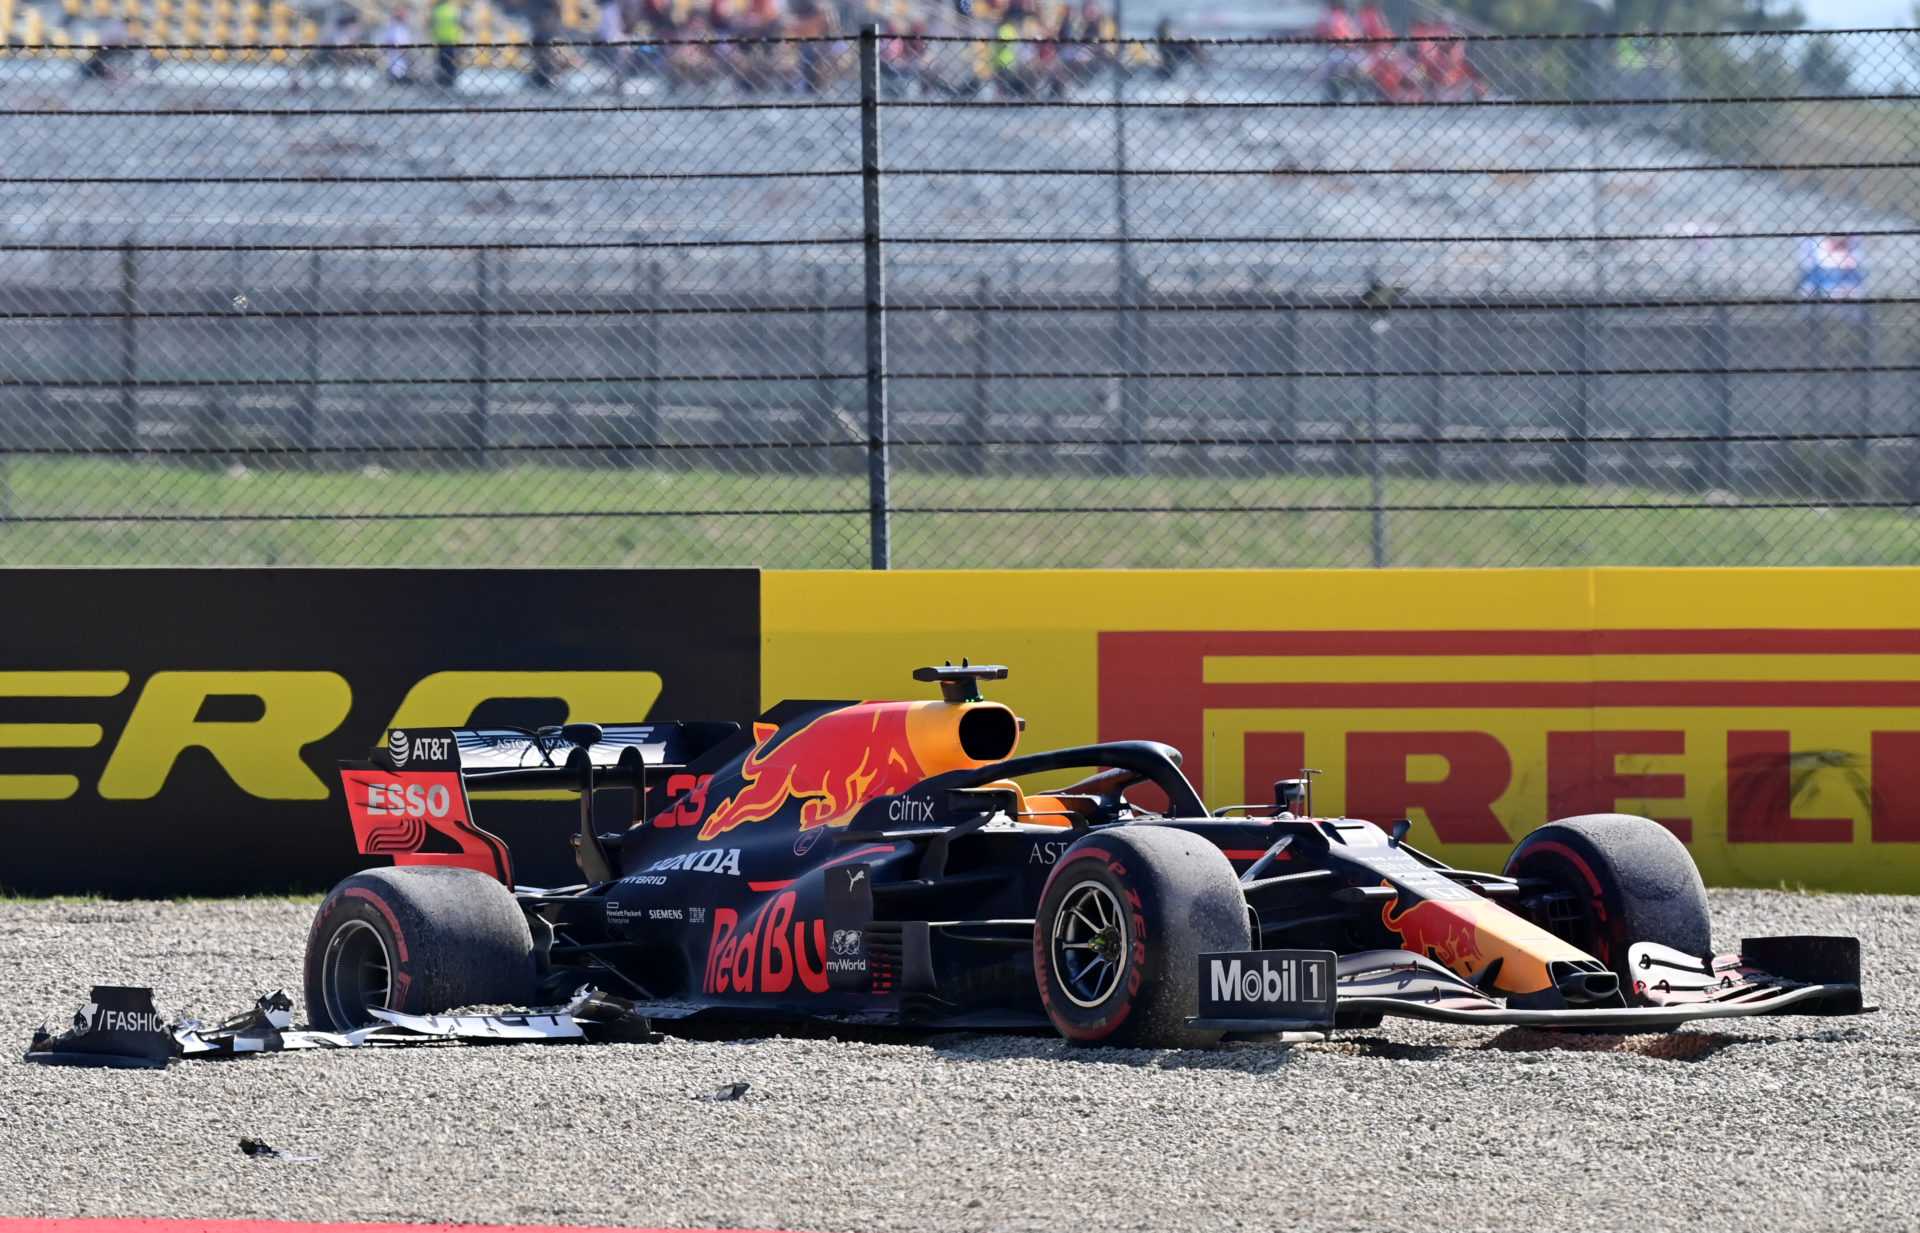 REGARDER: La rage démoniaque de Max Verstappen après sa retraite du Grand Prix de Toscane